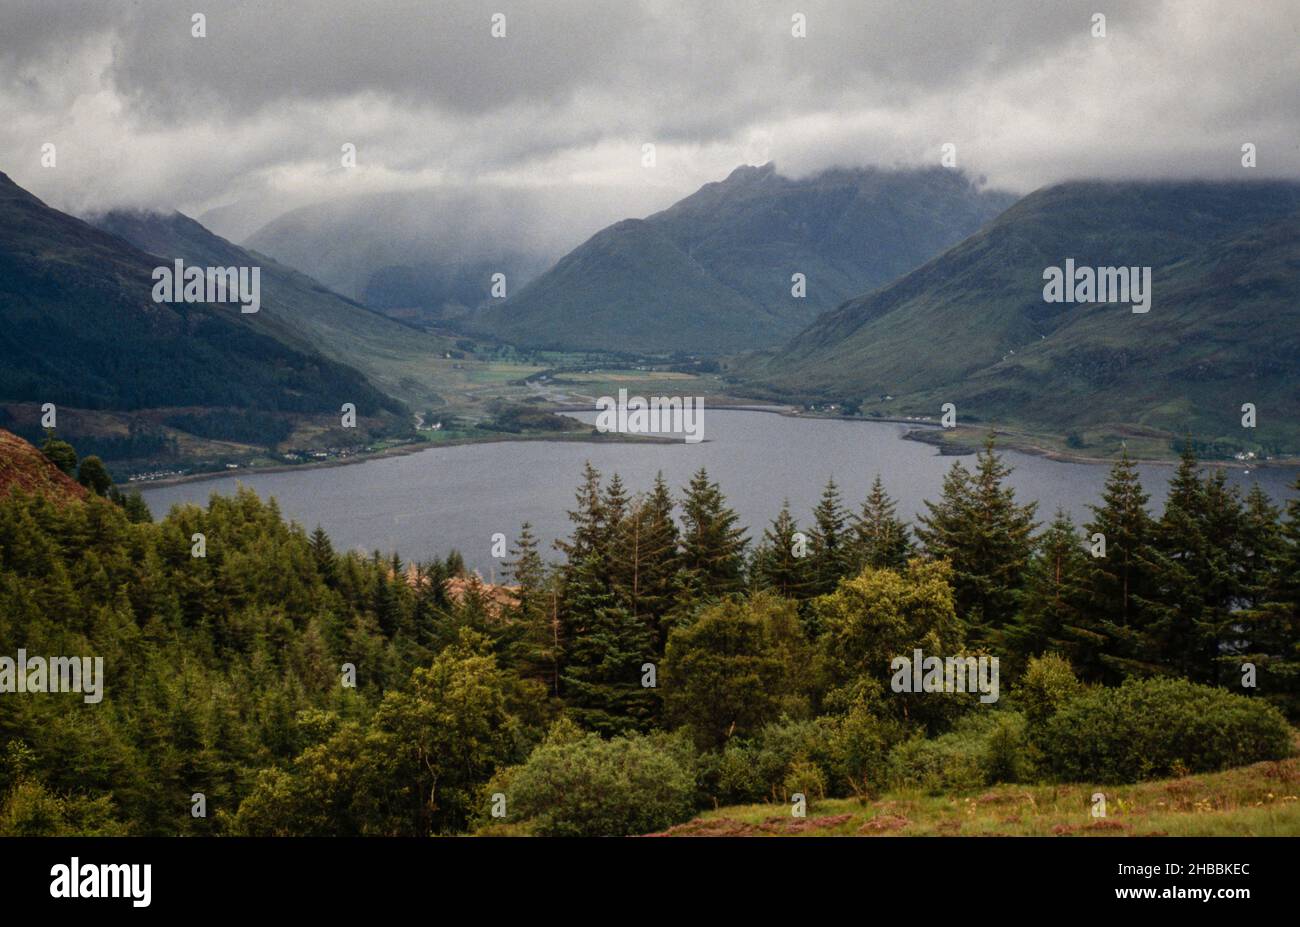 Archivbild (aus Transparenz gescannt) Berge und Loch mit fernem Regensturm, westliche Highlands von Schottland, 1990 Stockfoto